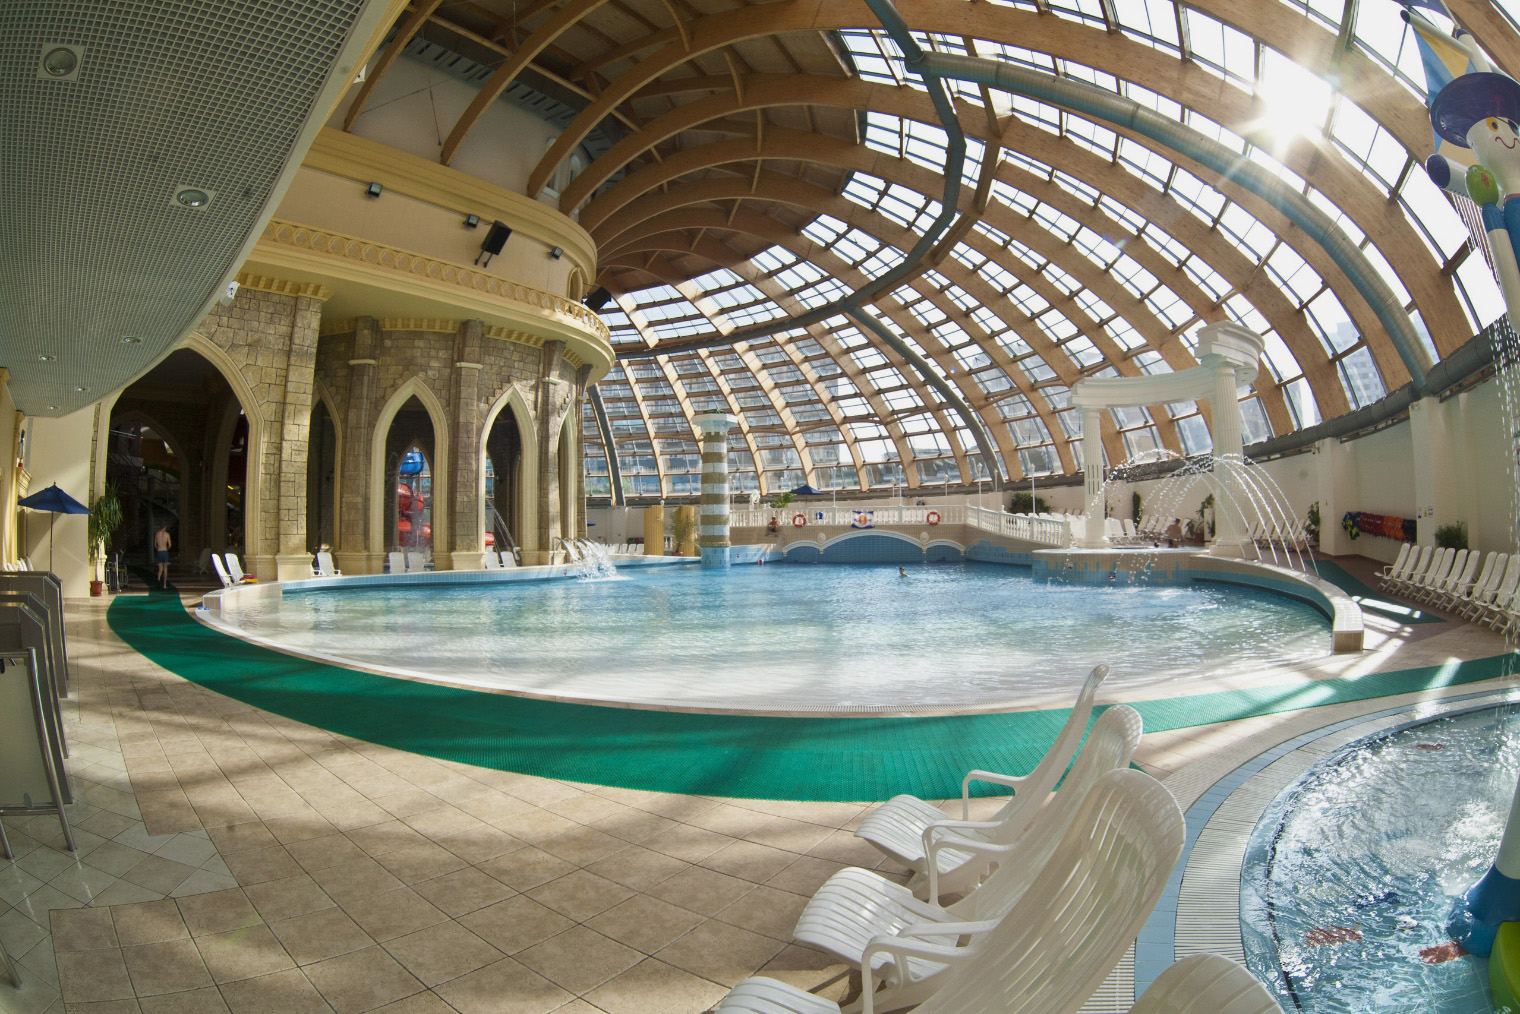 Самый большой аквапарк Москвы.
Лето ждет вас здесь в любое время года!